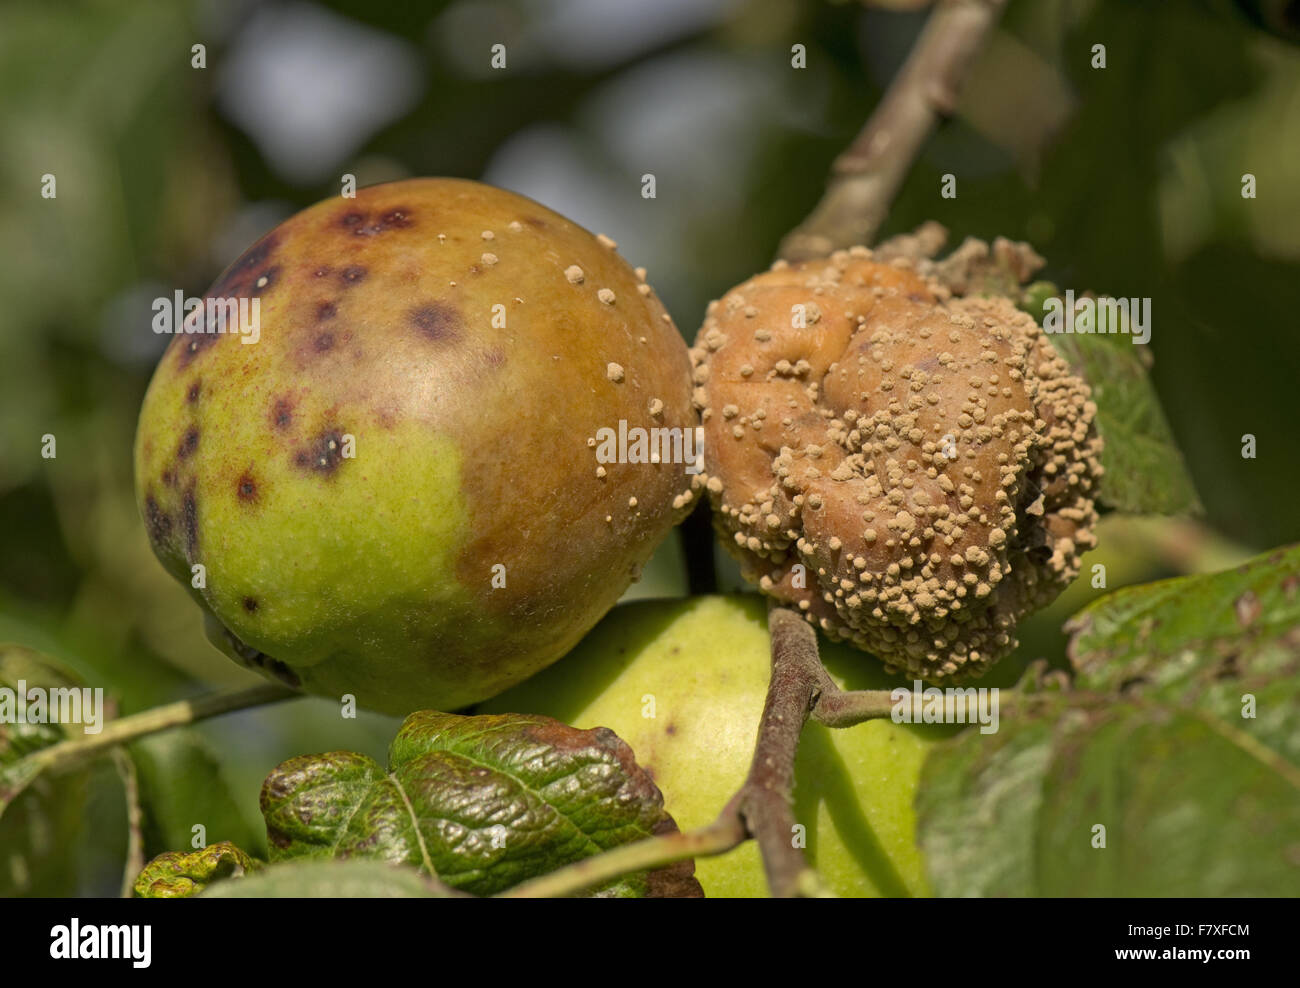 Brown rot, Monilinia spp., amongst apples on tree, Berkshire, England, September Stock Photo